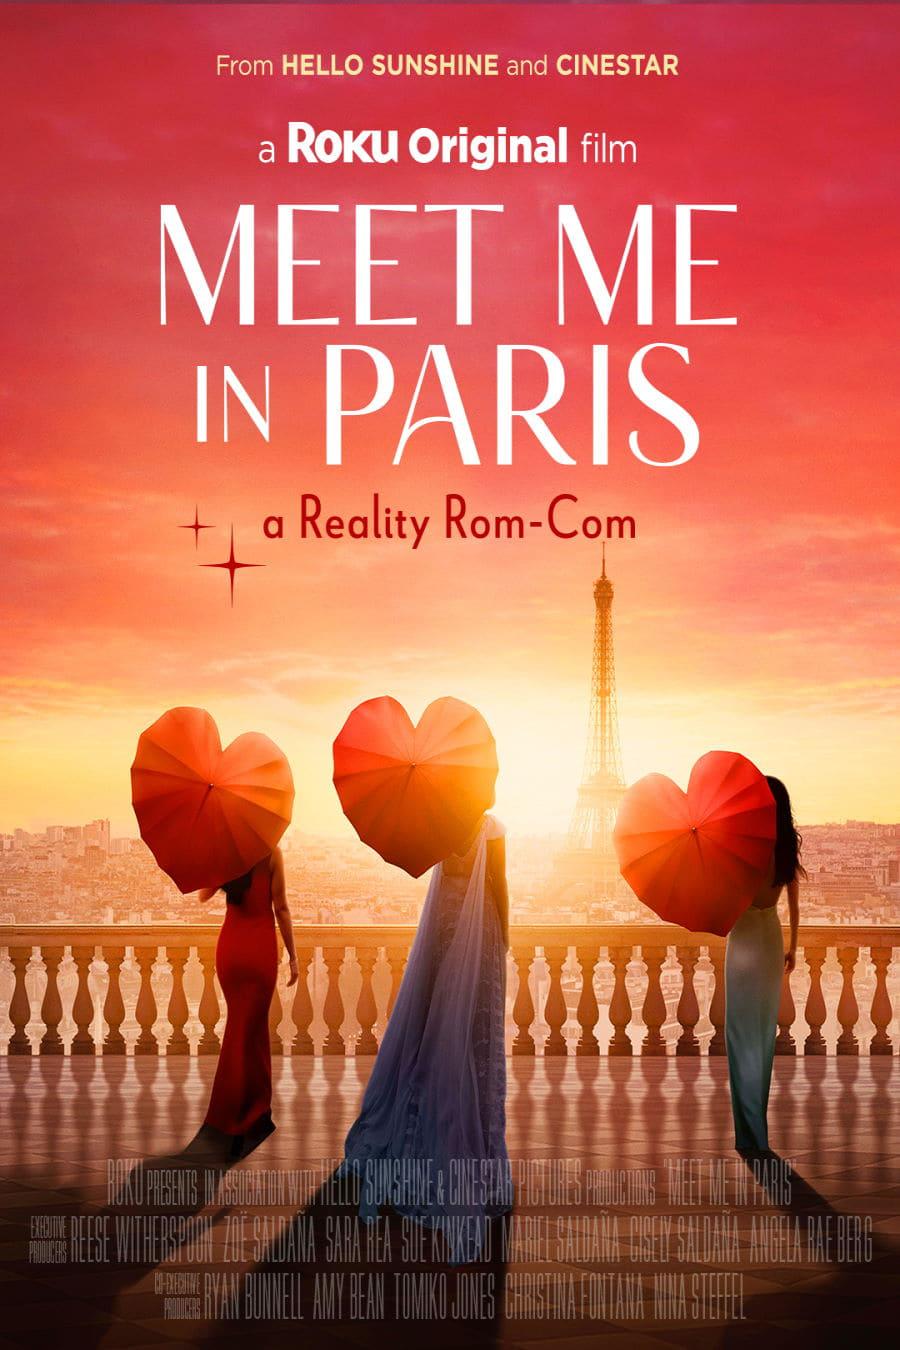 Meet Me in Paris poster